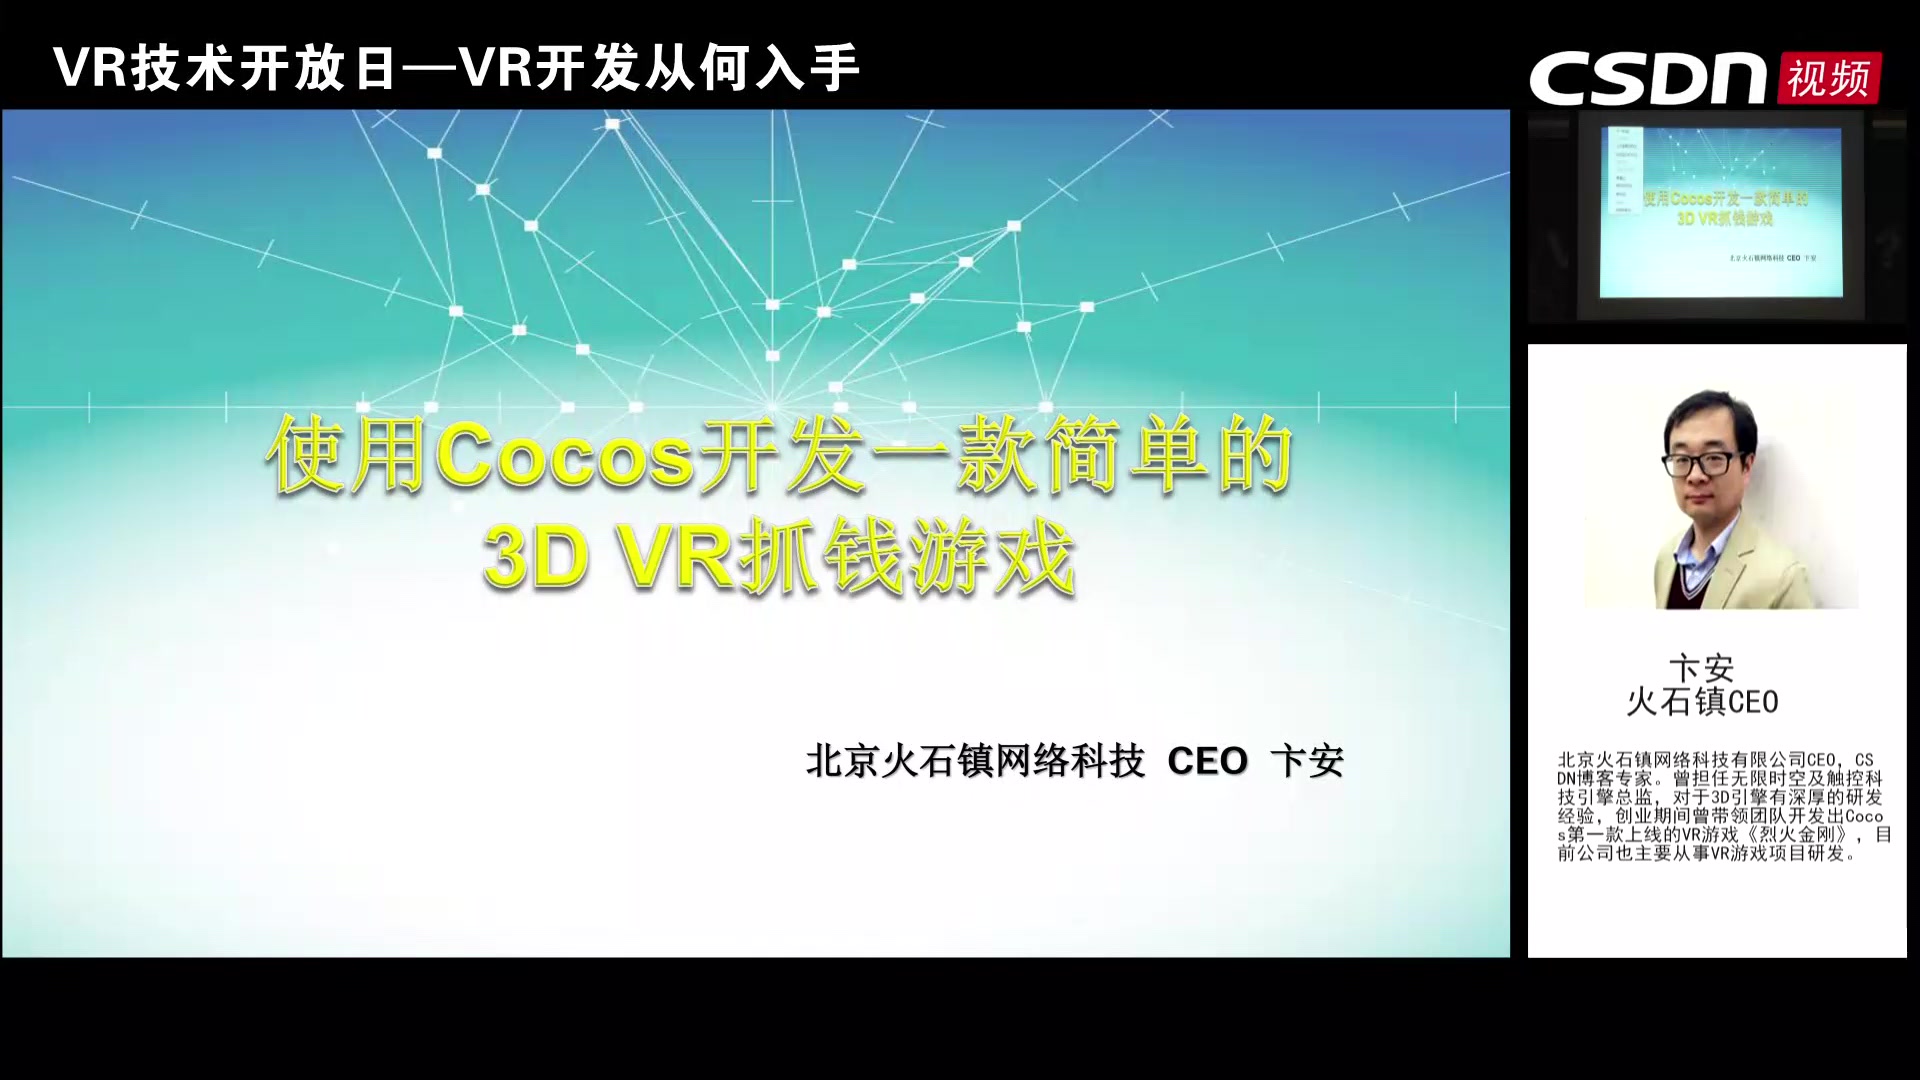 使用Cocos开发一款简单的3D VR抓钱游戏